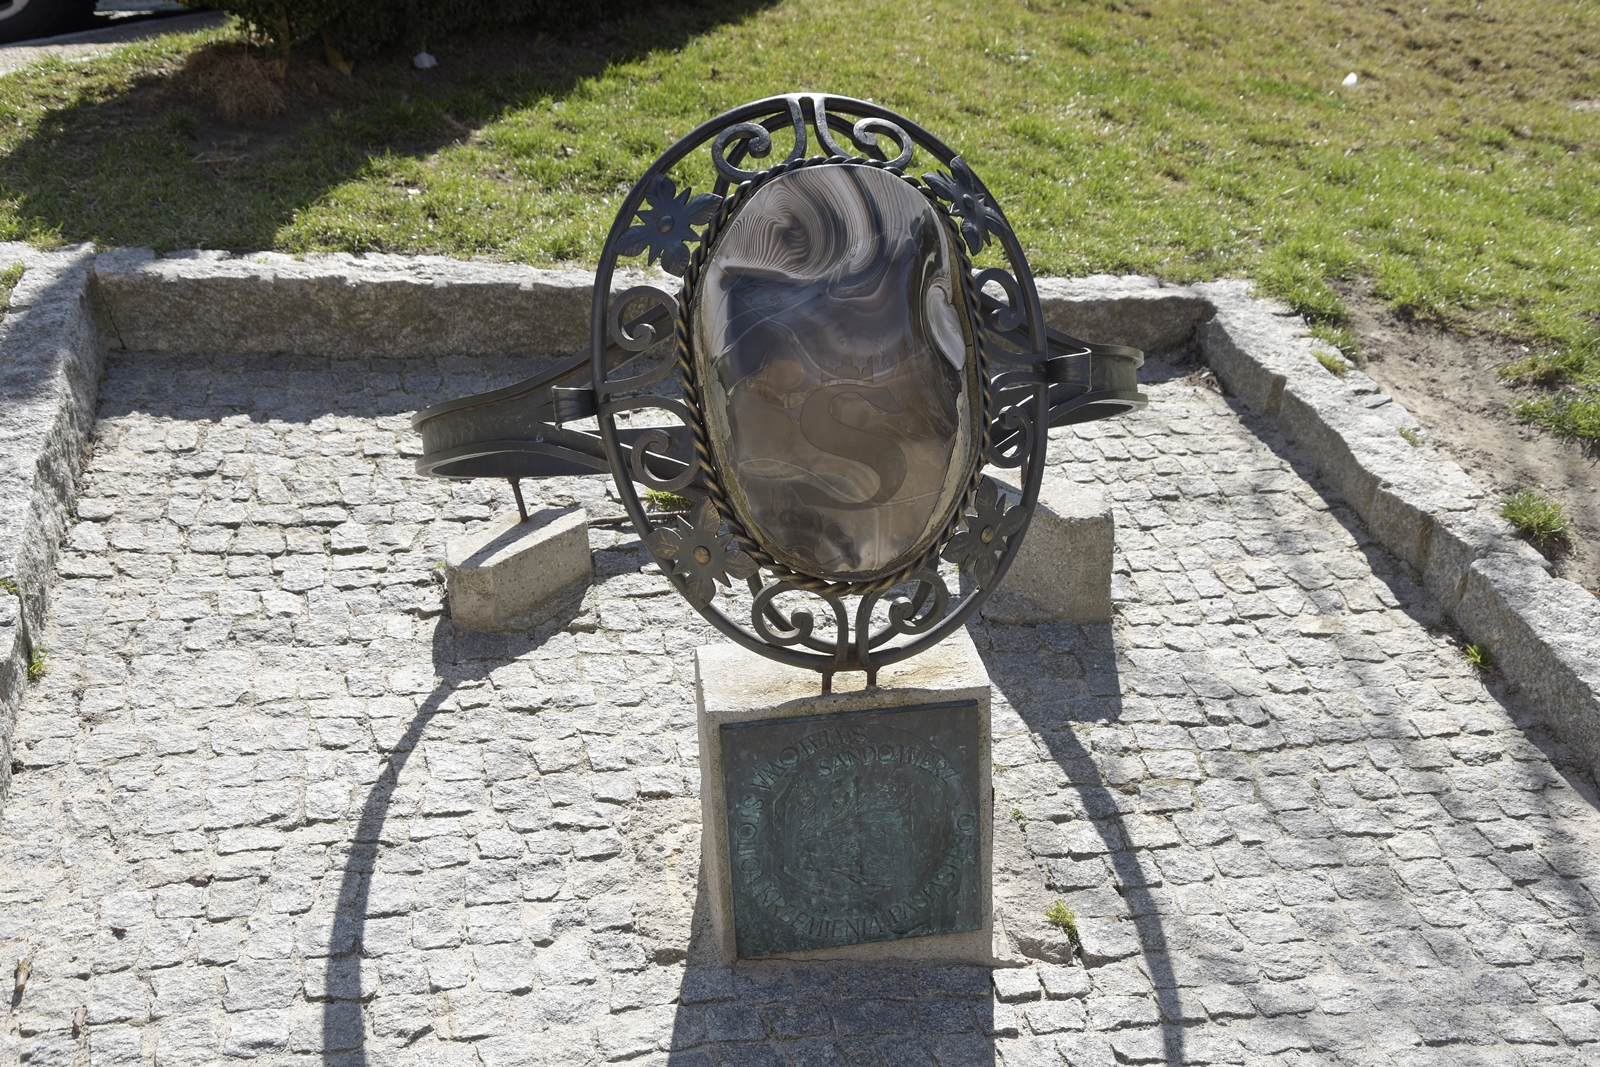 Ogromna instalacja pierścienia z krzemieniem pasiastym jako oczko - to jedna z atrakcji Sandomierza.